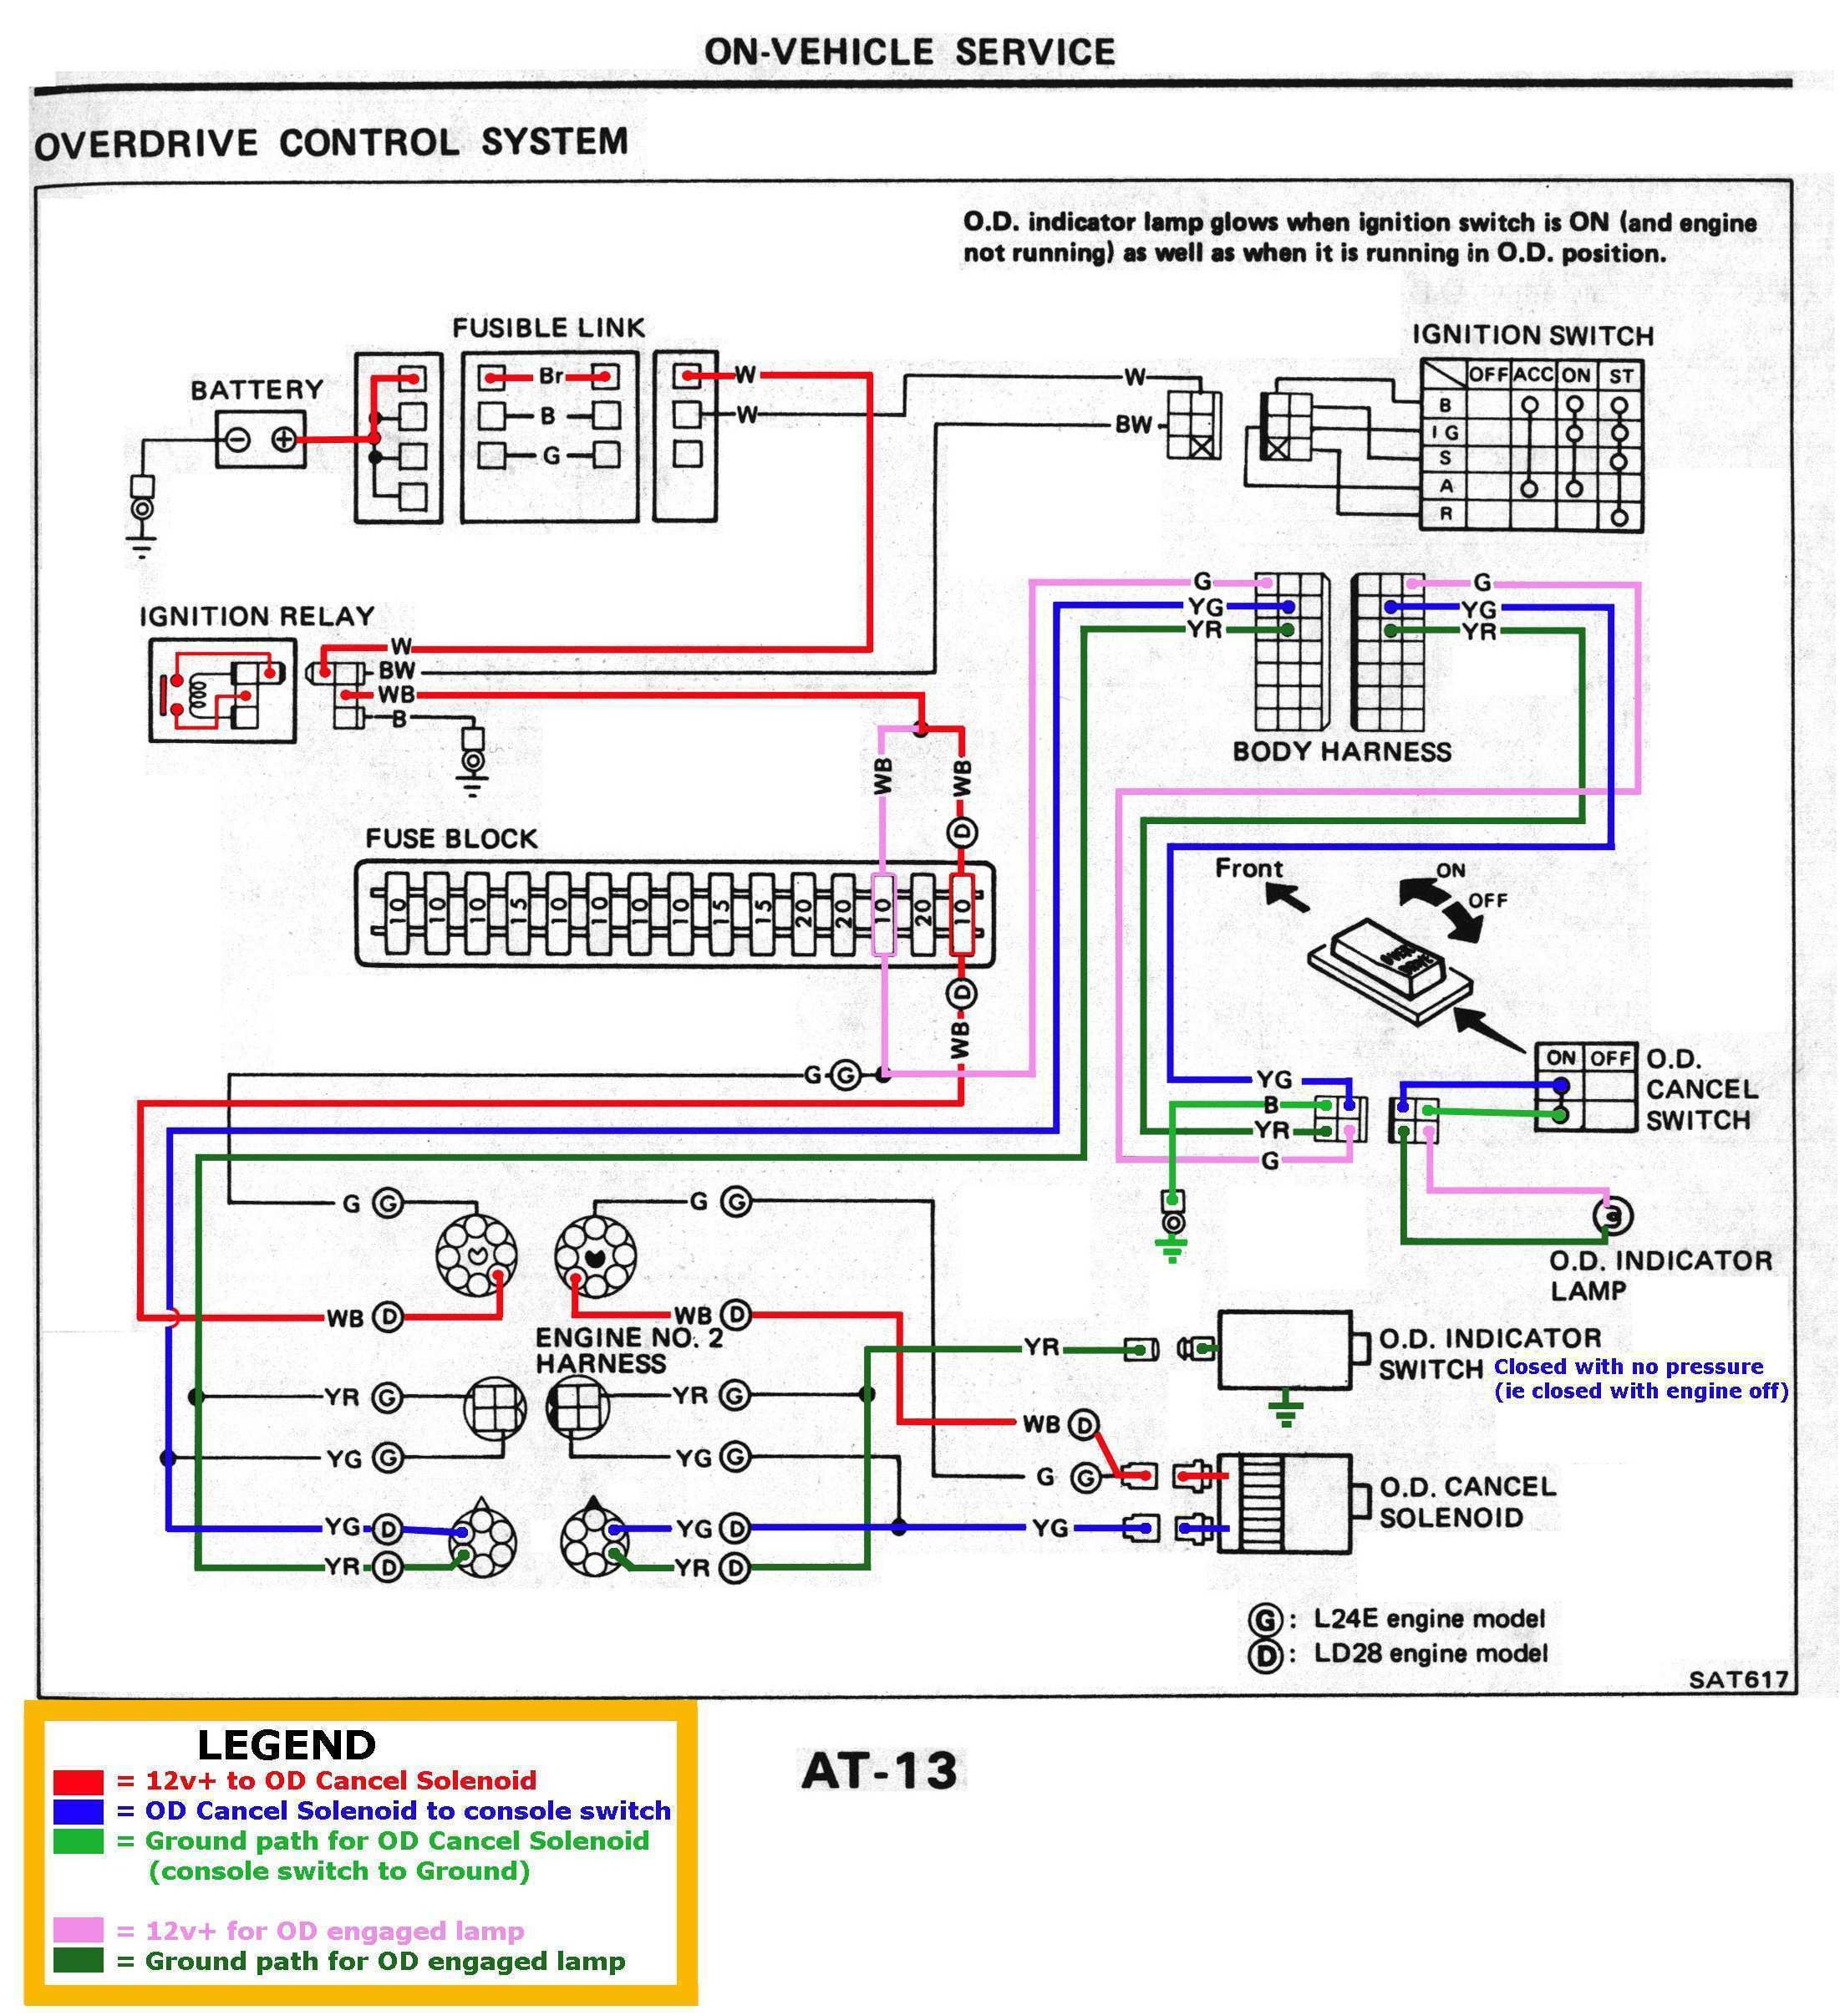 Free Isuzu Wiring Diagram - Wiring Diagrams Data throughout Er 5 Wiring Diagram